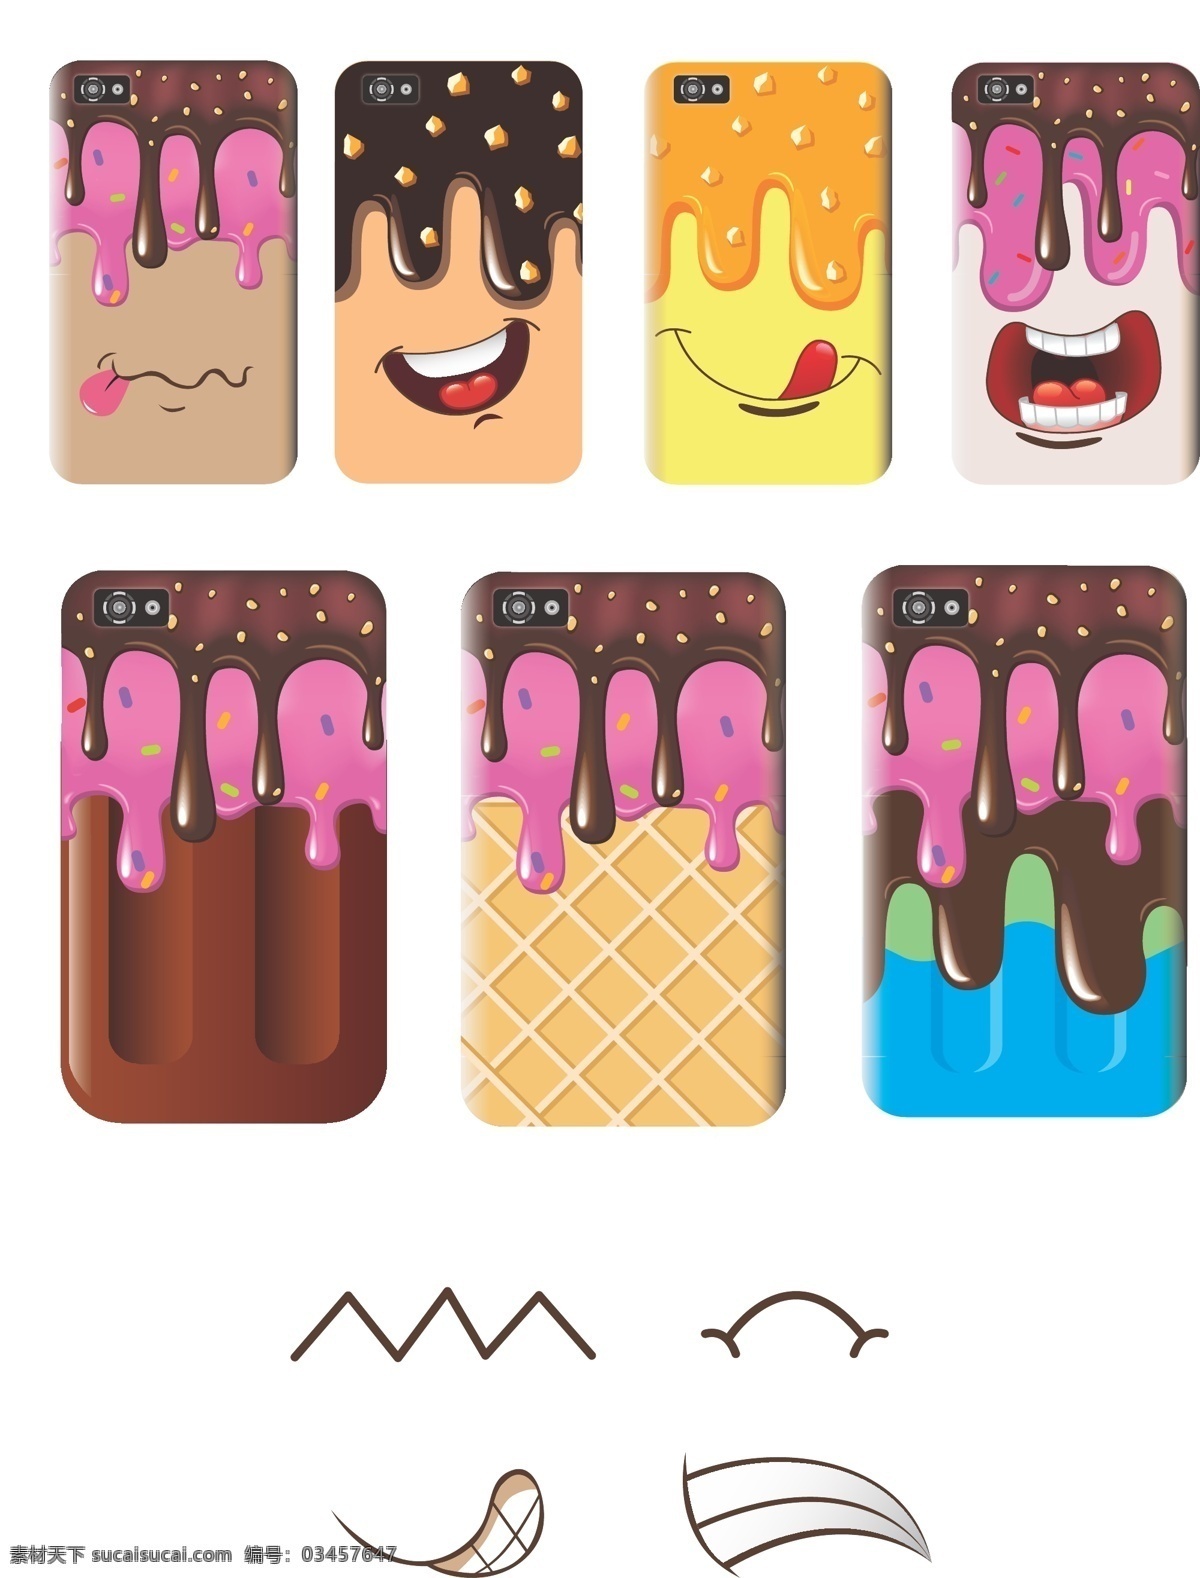 原创手机壳 雪糕 冰淇淋 手机壳 表情 可爱 矢量素材 其他矢量 矢量